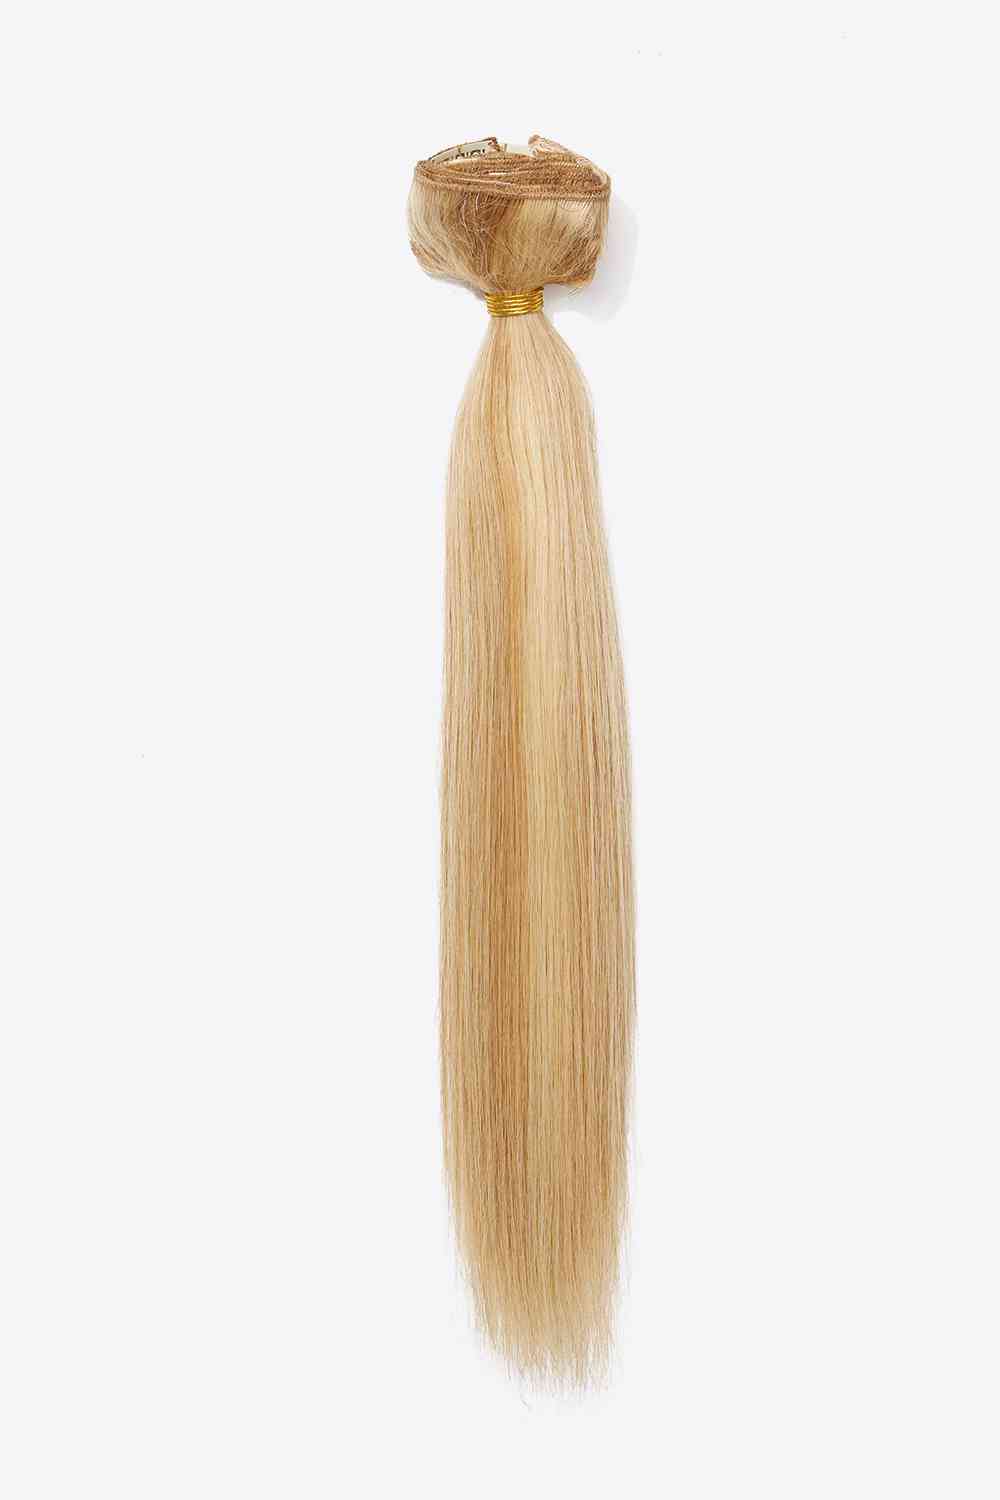 18" 100g #27/613 Extensions de cheveux à clipser Cheveux vierges humains